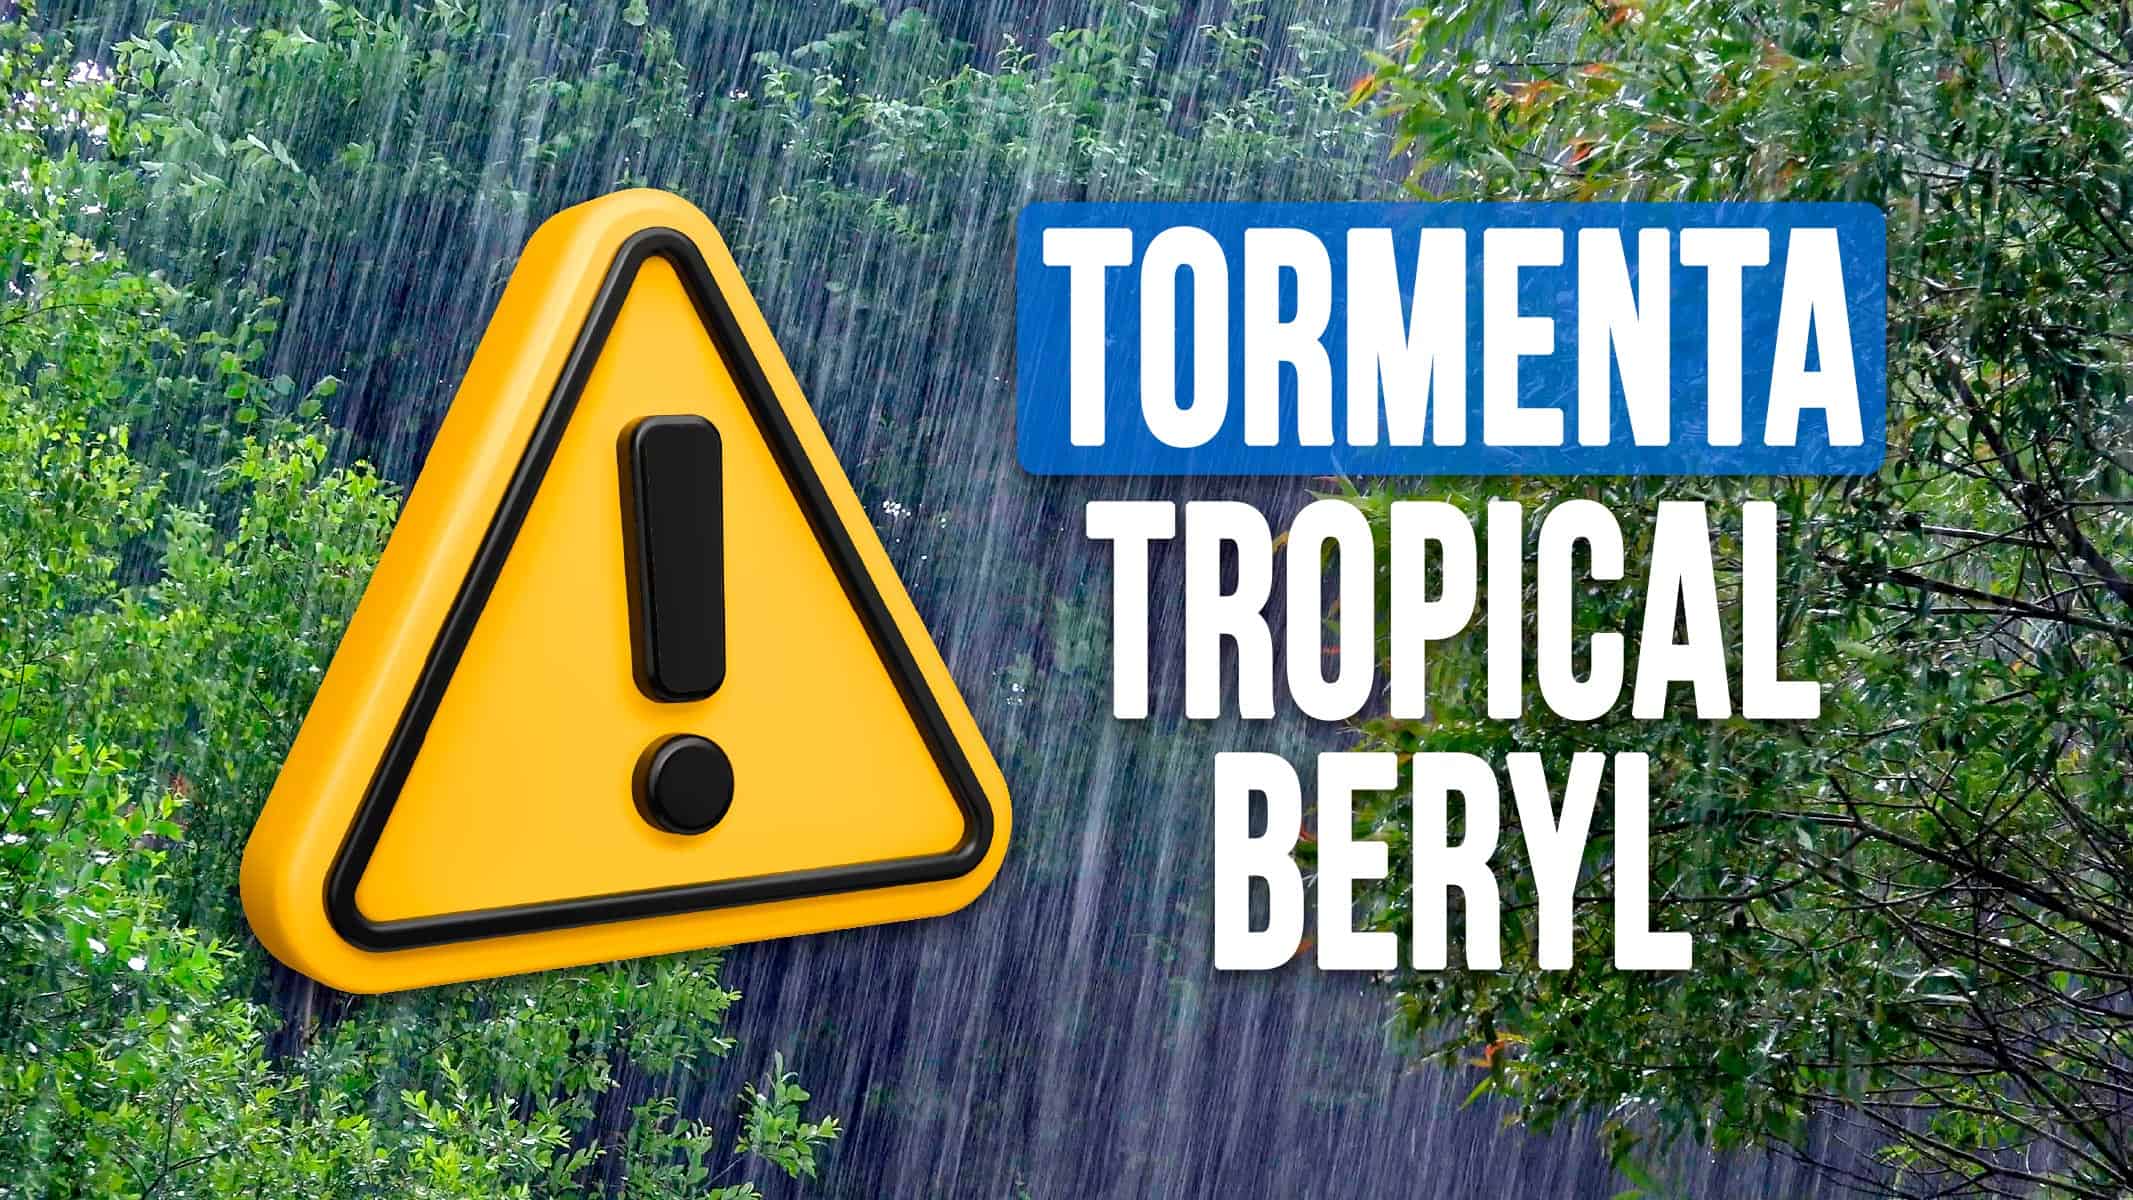 Tormenta Tropical Beryl Podrá Afectar a Cuba Este Fin de Semana: Mira el Pronóstico